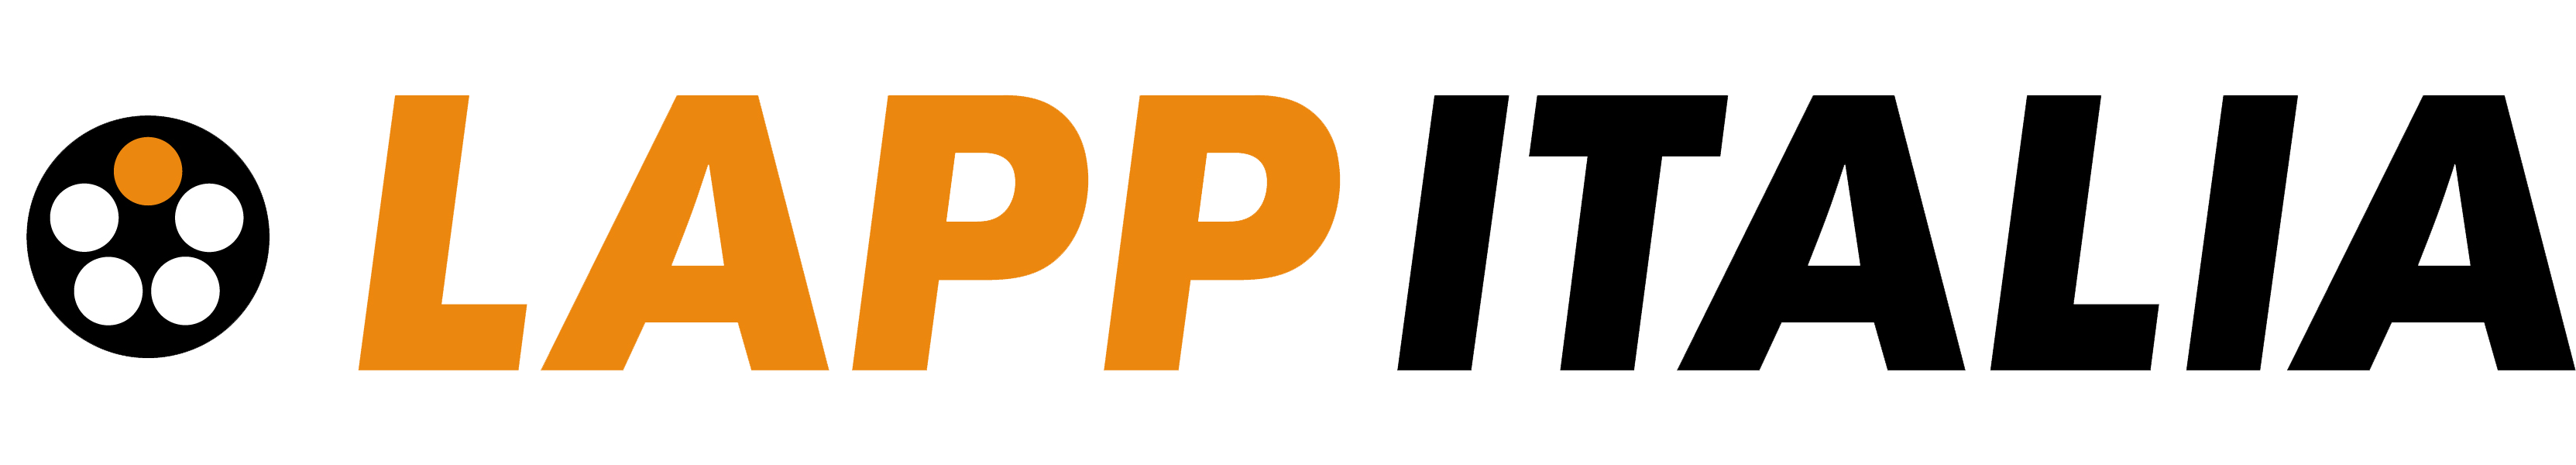 lapp italia logo